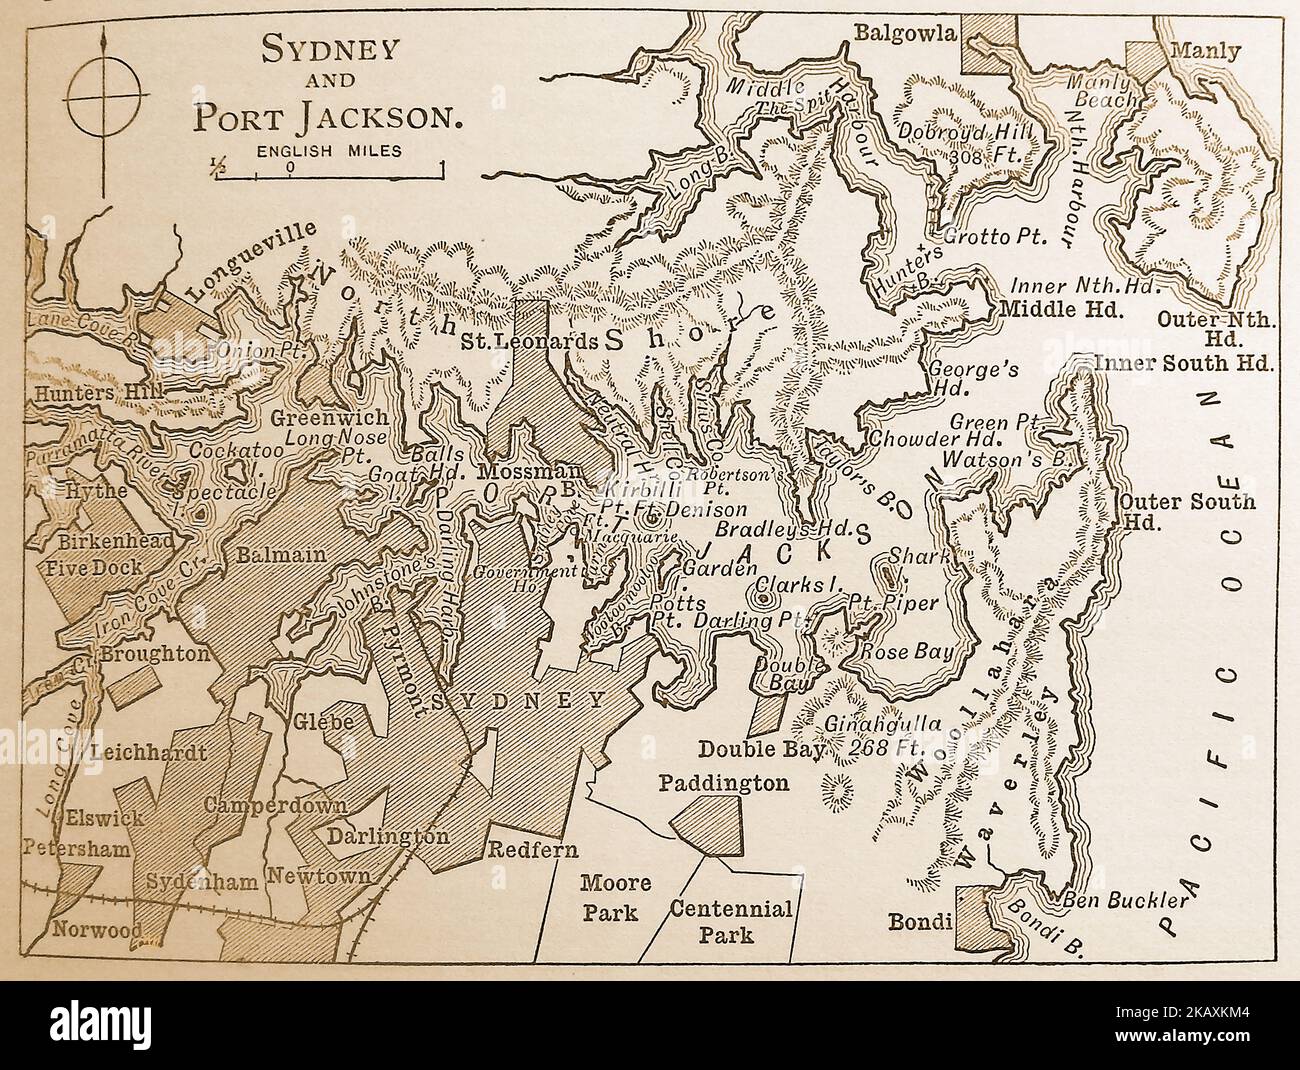 Mapa de finales de 19thcentury de las regiones de Sydney y Port Jackson Foto de stock